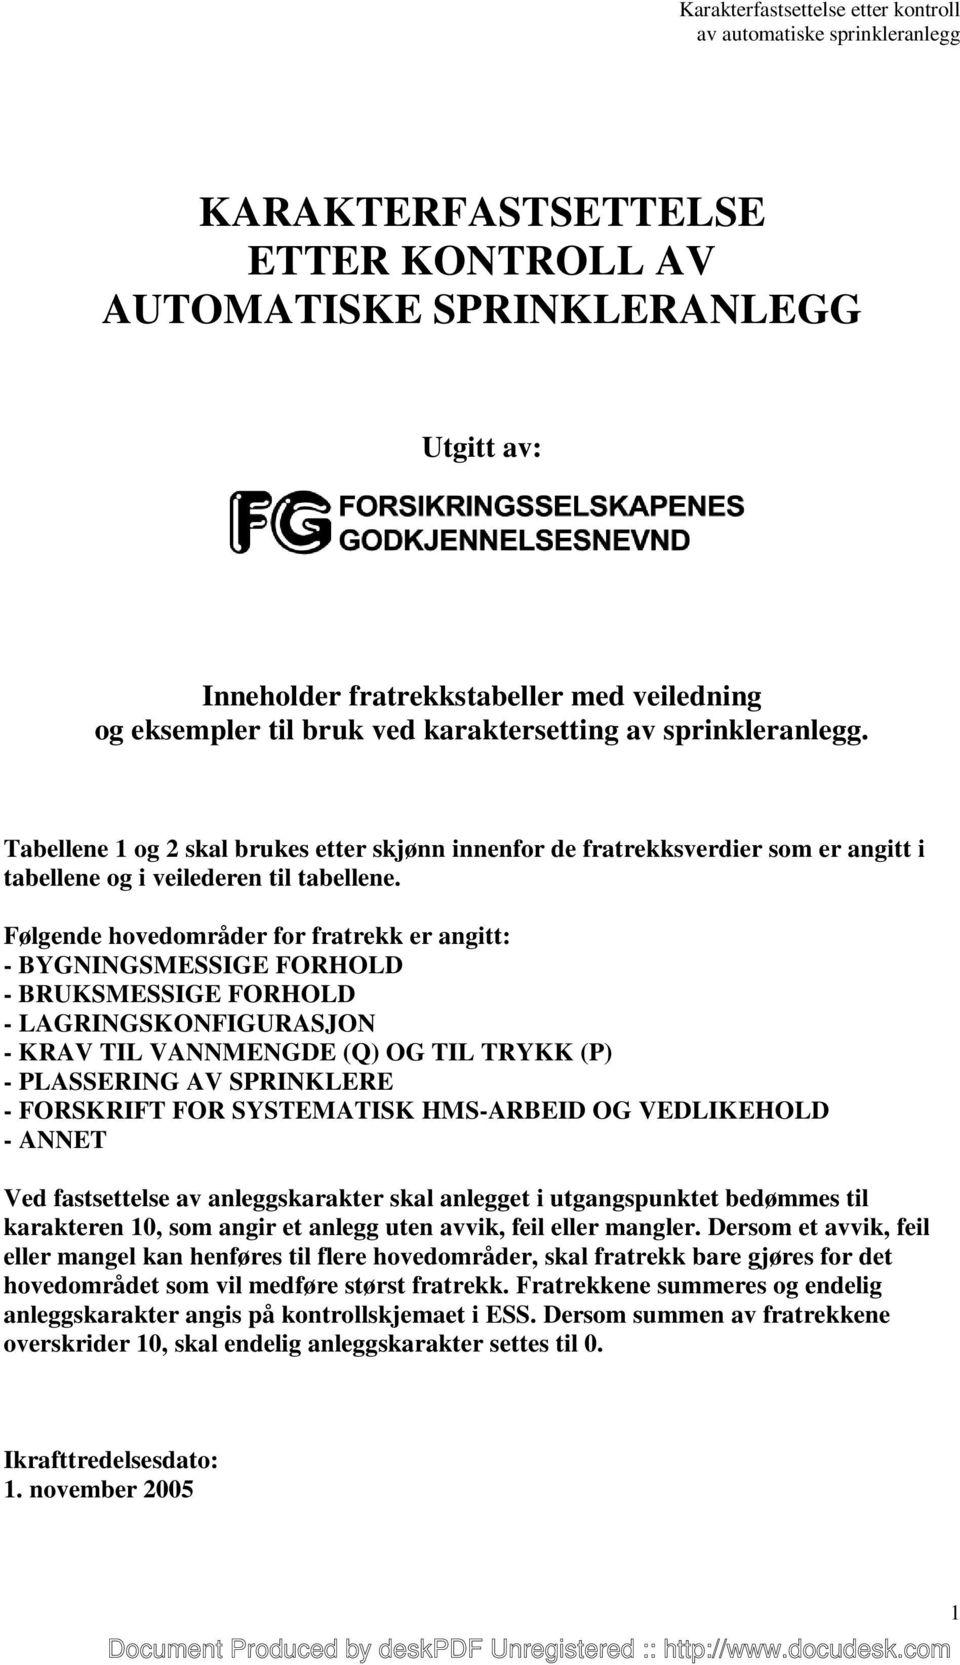 KARAKTERFASTSETTELSE ETTER KONTROLL AV AUTOMATISKE SPRINKLERANLEGG - PDF  Gratis nedlasting